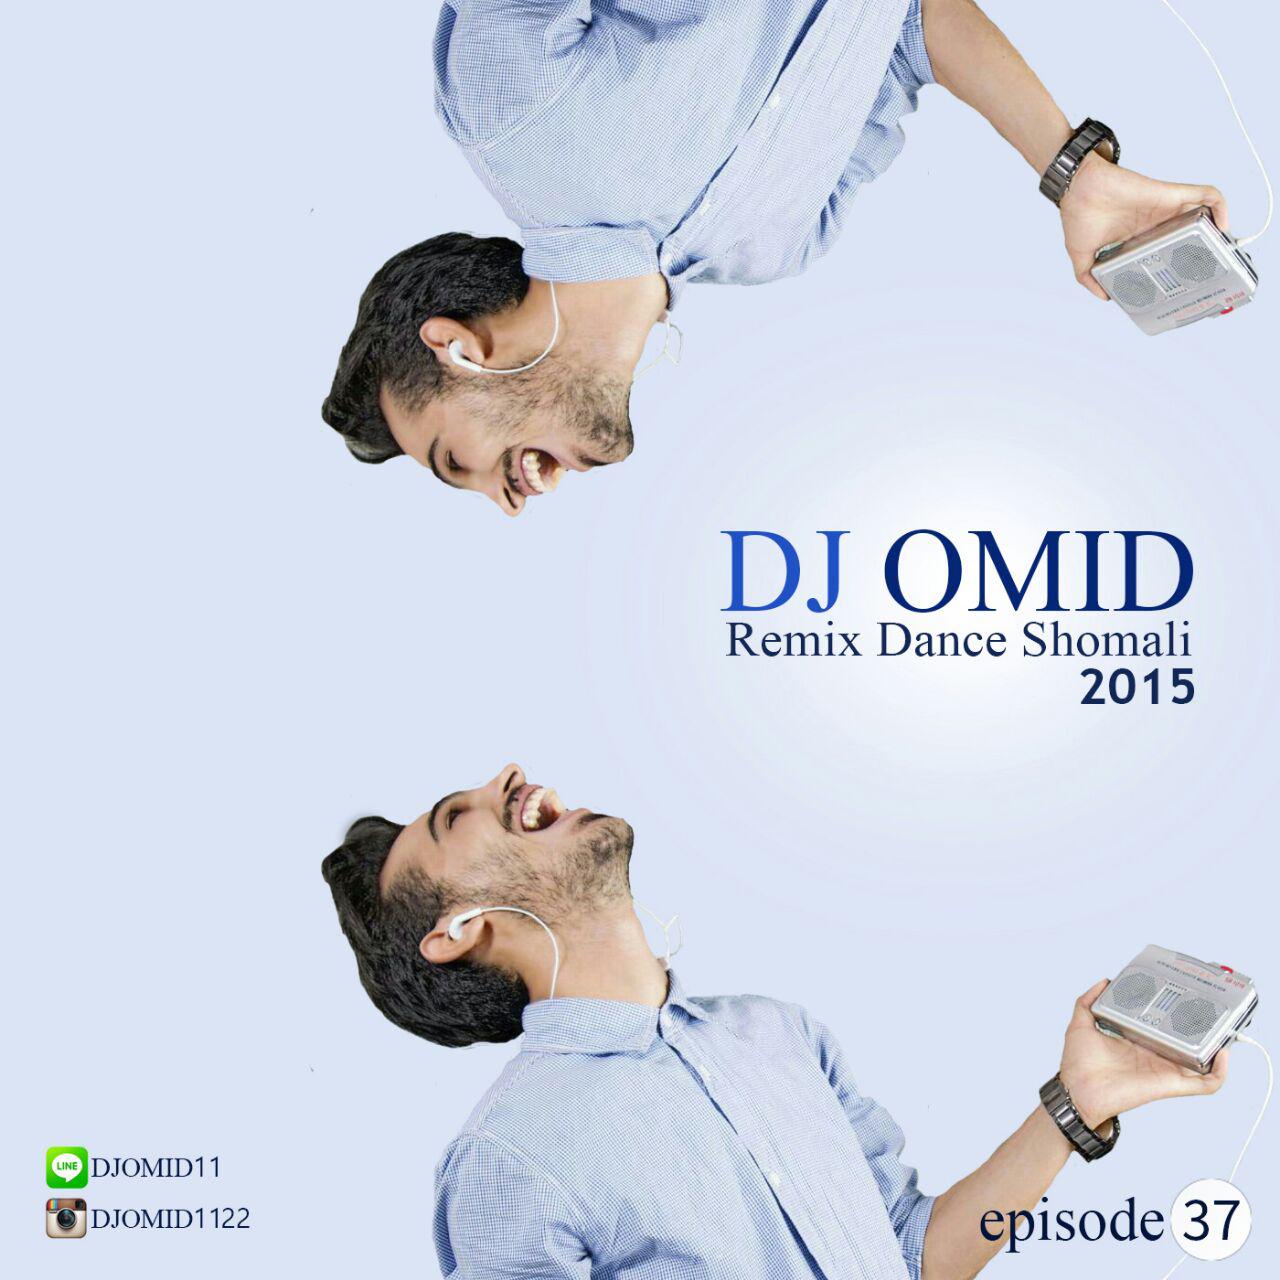 Dj Omid - Remix Dance Shomali